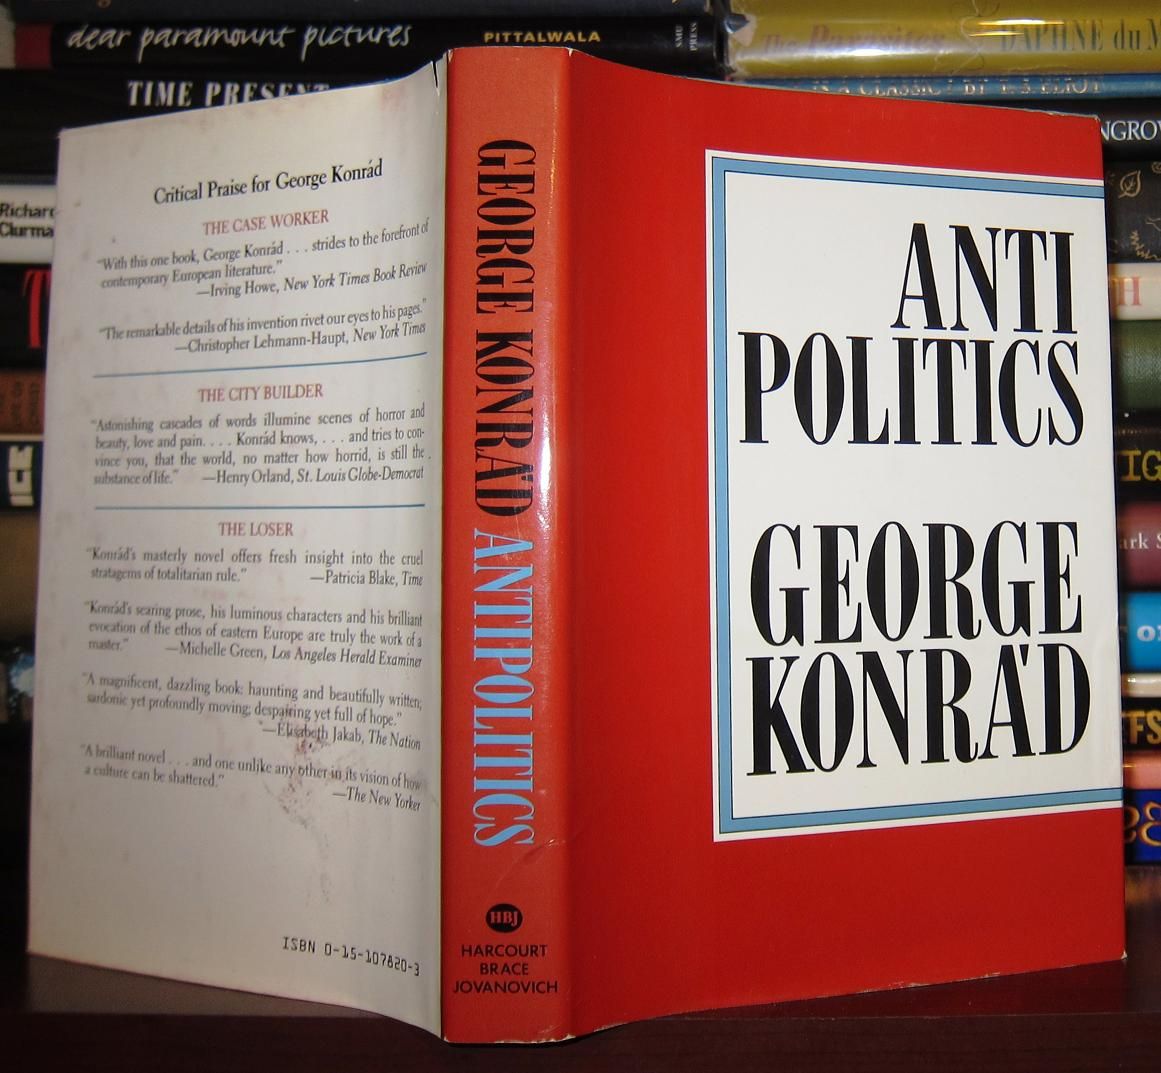 KONRA'D, GEORGE; KONRAD, GEORGE - Anti Politics an Essay